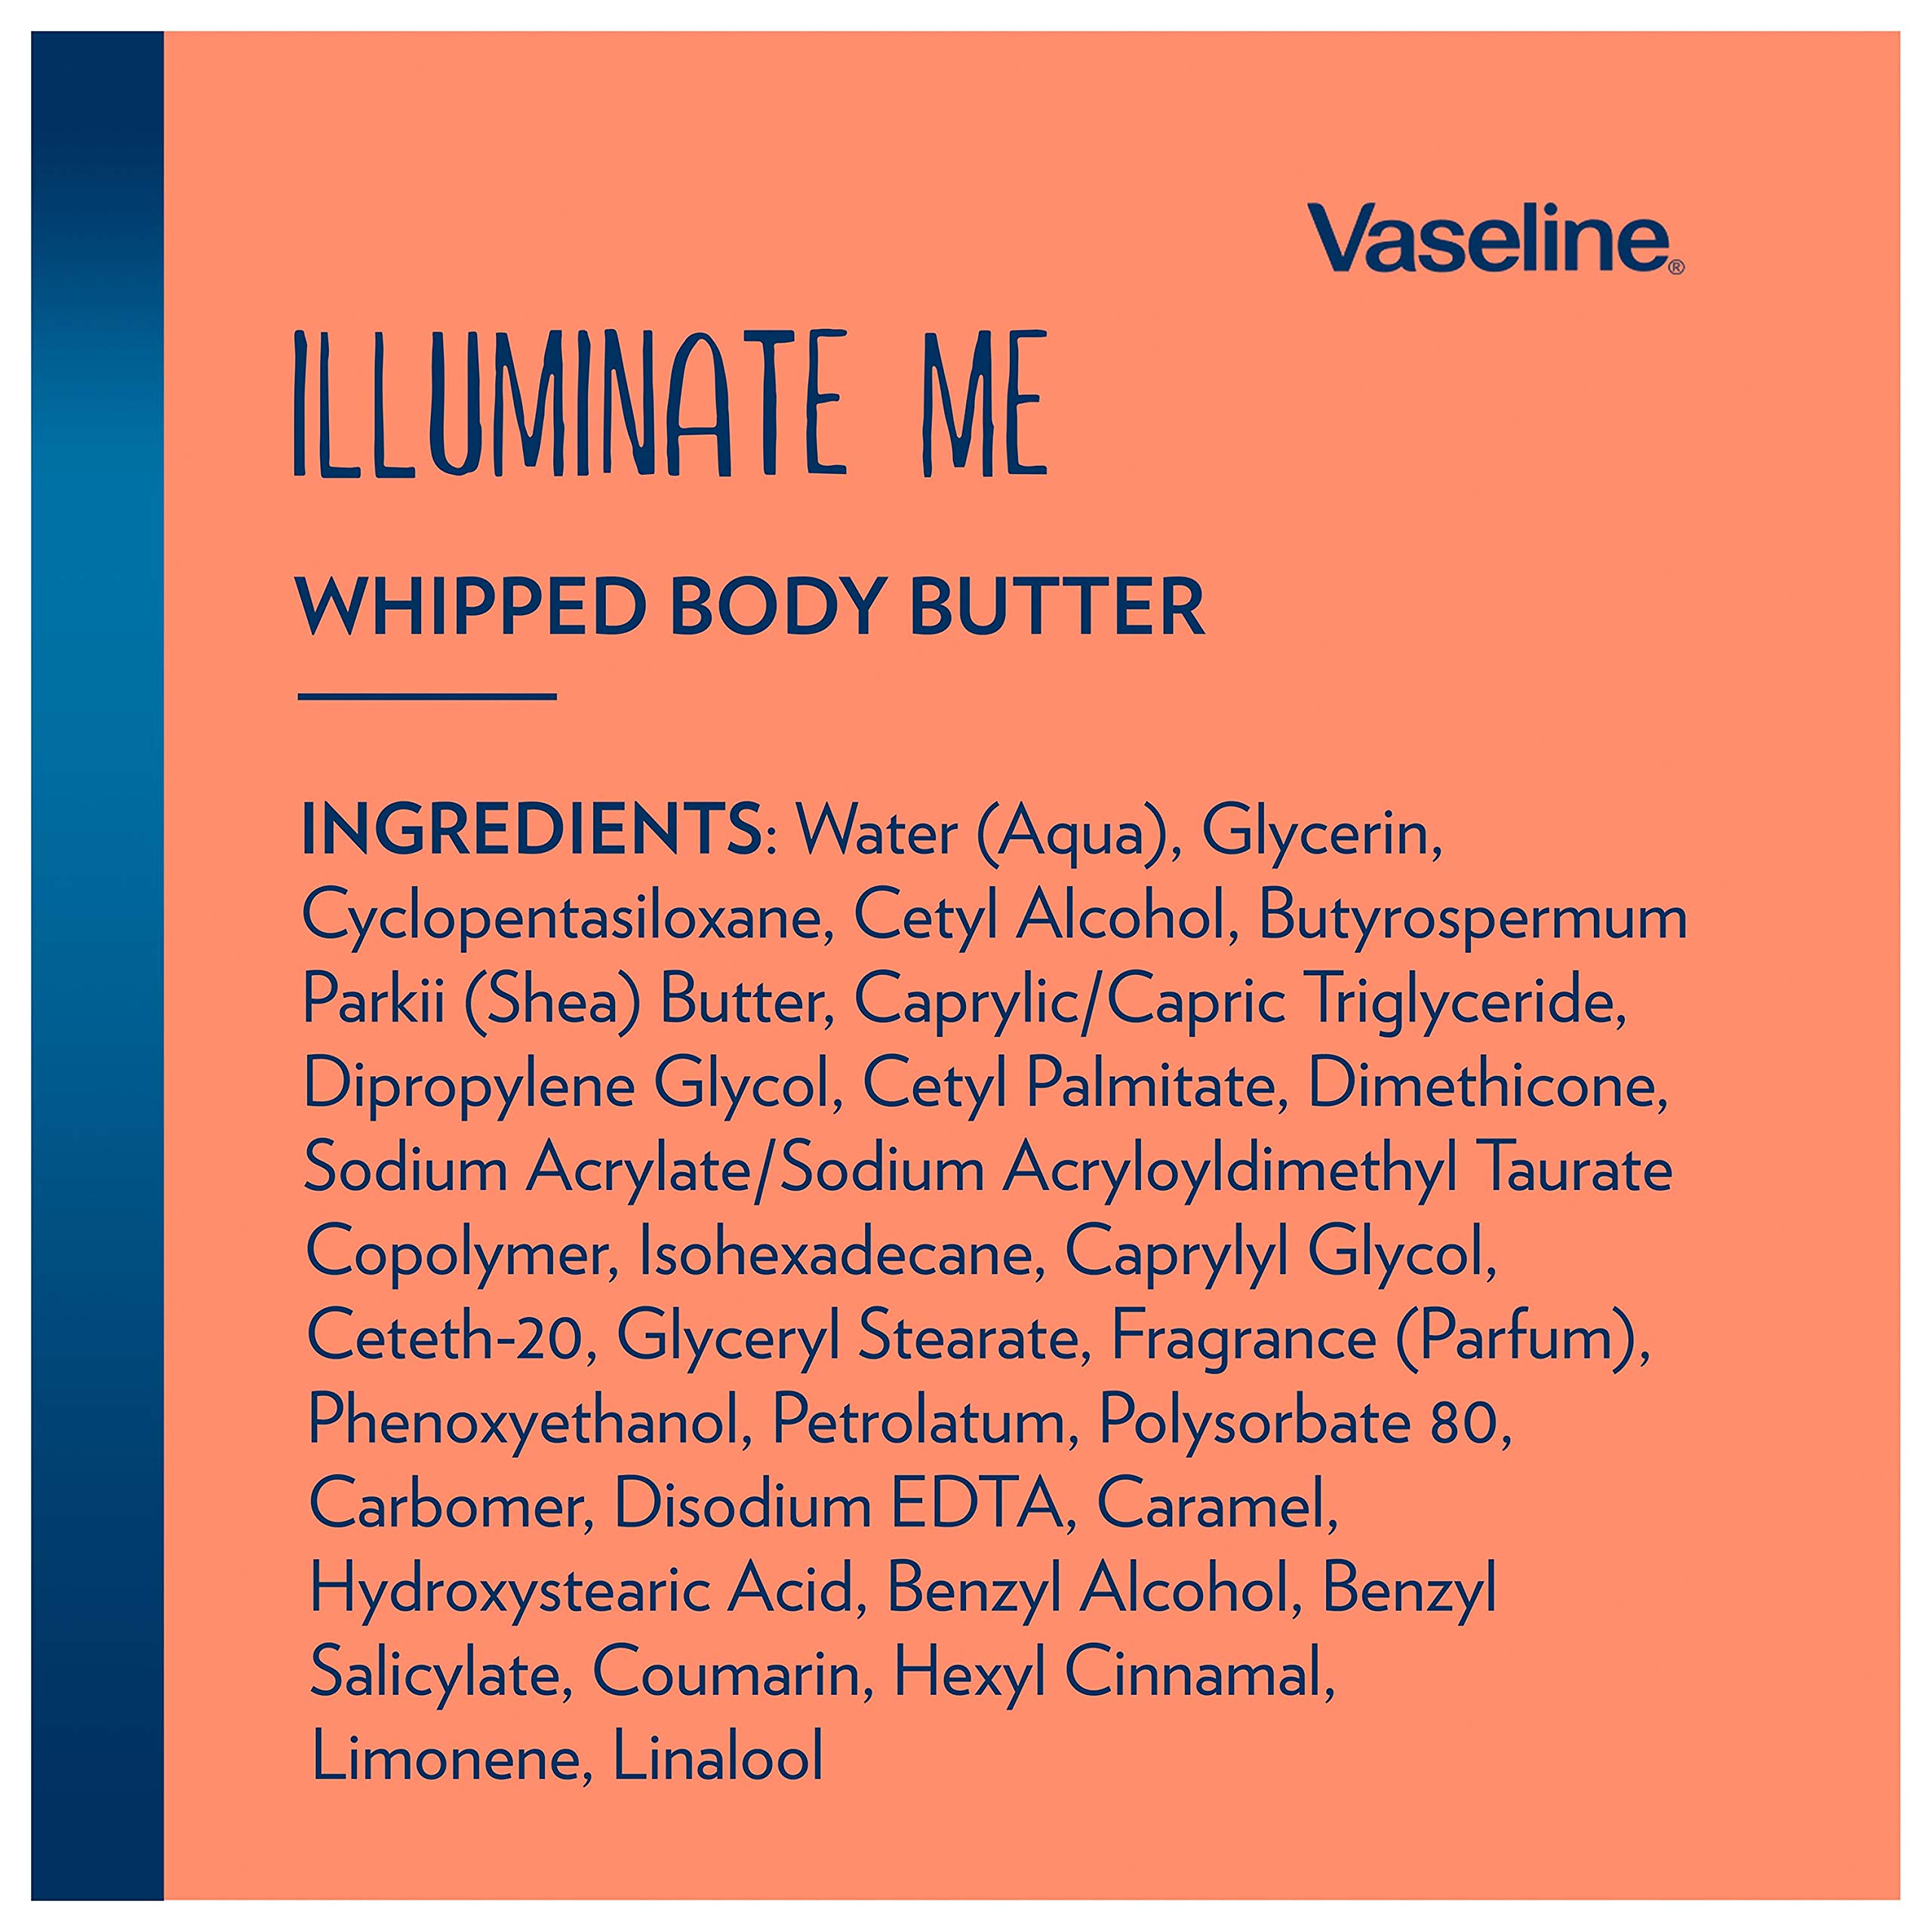 Vaseline Illuminate Me Body Butter Whipped Body Butter Created For Melanin Rich Skin Provides 24 Hour Moisturization For Dry Skin 11 oz